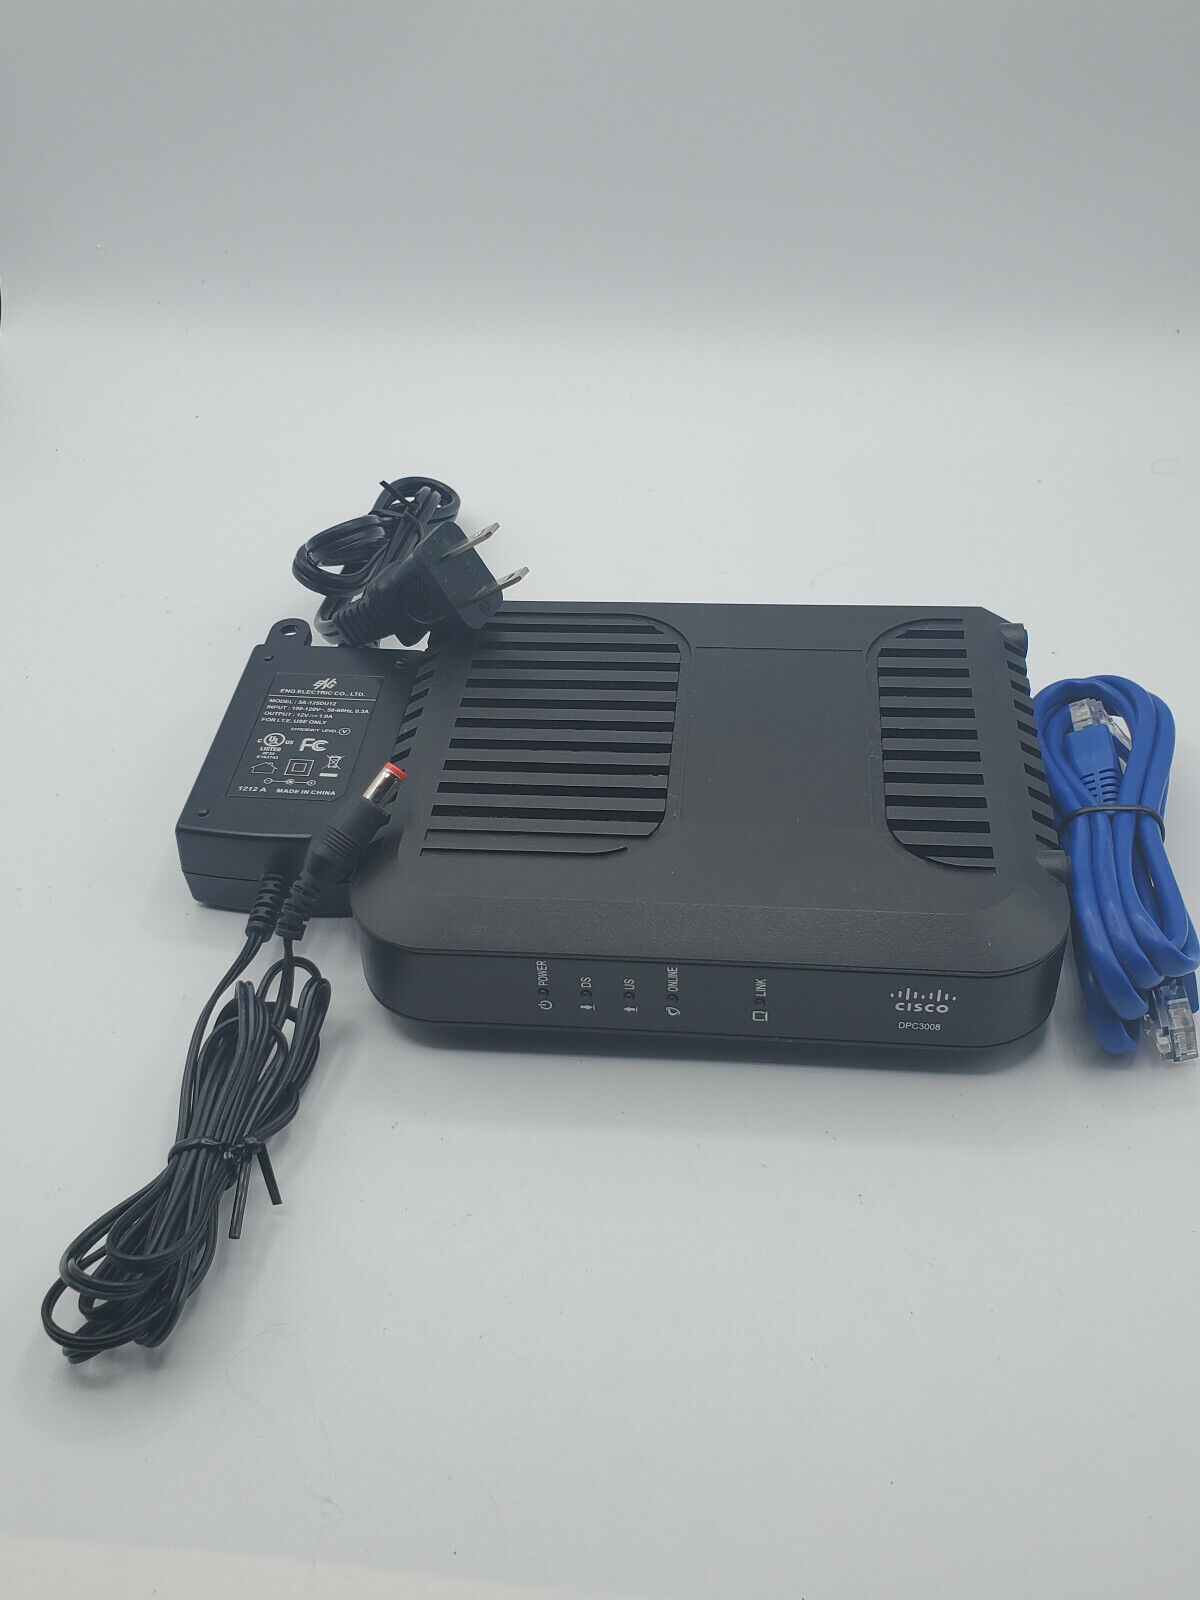 Cisco Dpc3008 Docsis 3.0 Cable Modem G1 Working Condition